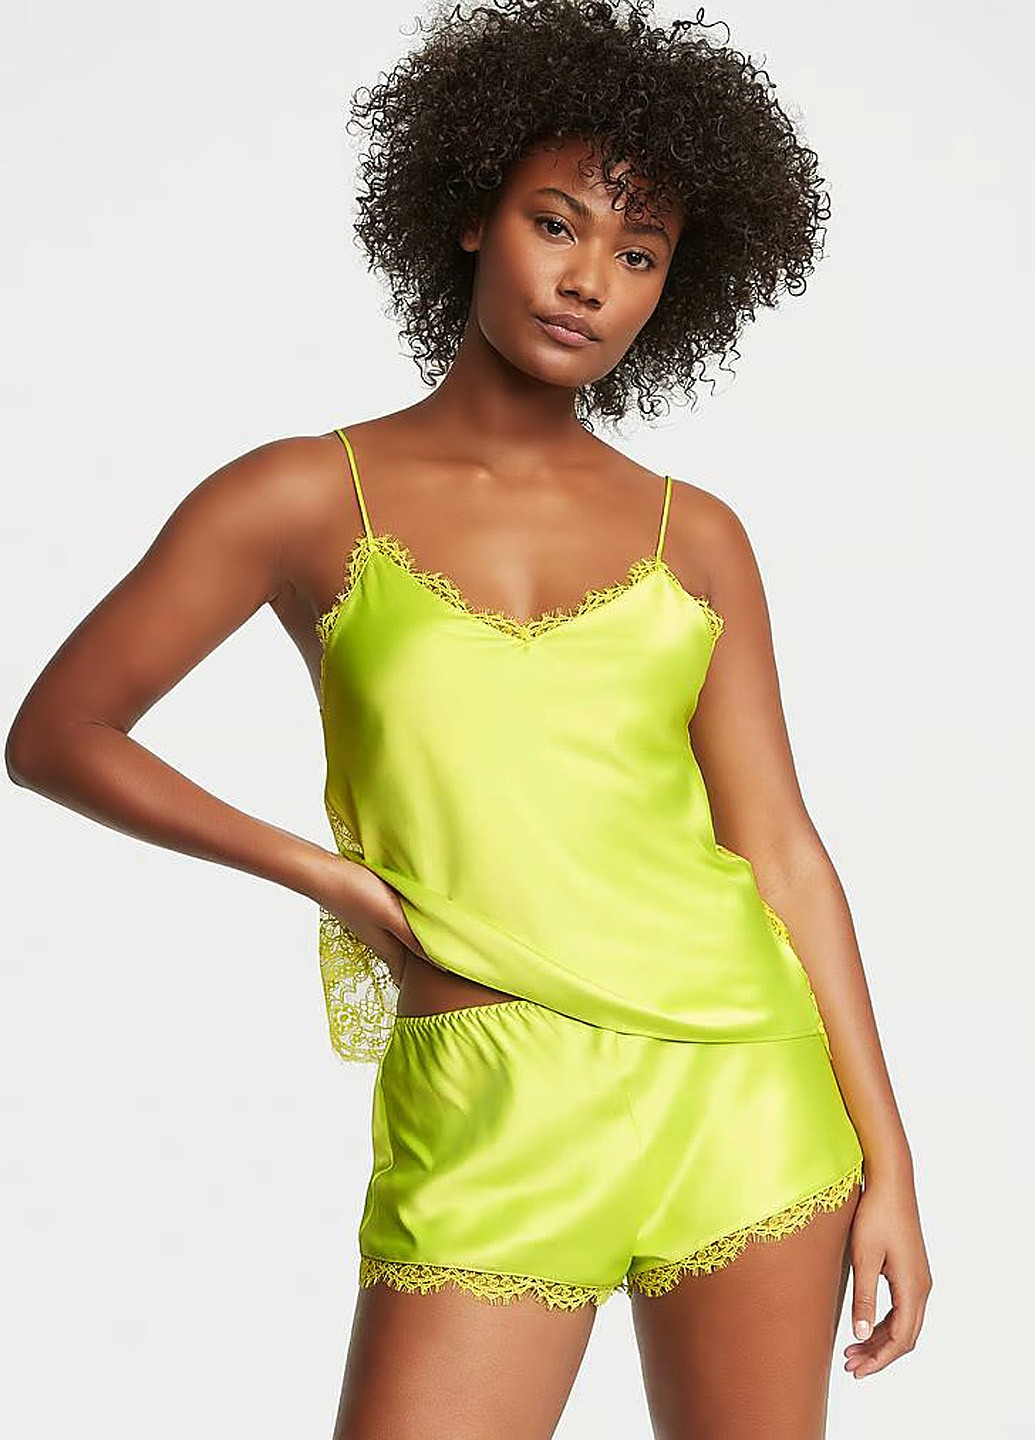 Кислотно-зеленая всесезон пижама (топ, шорты) топ + шорты Victoria's Secret